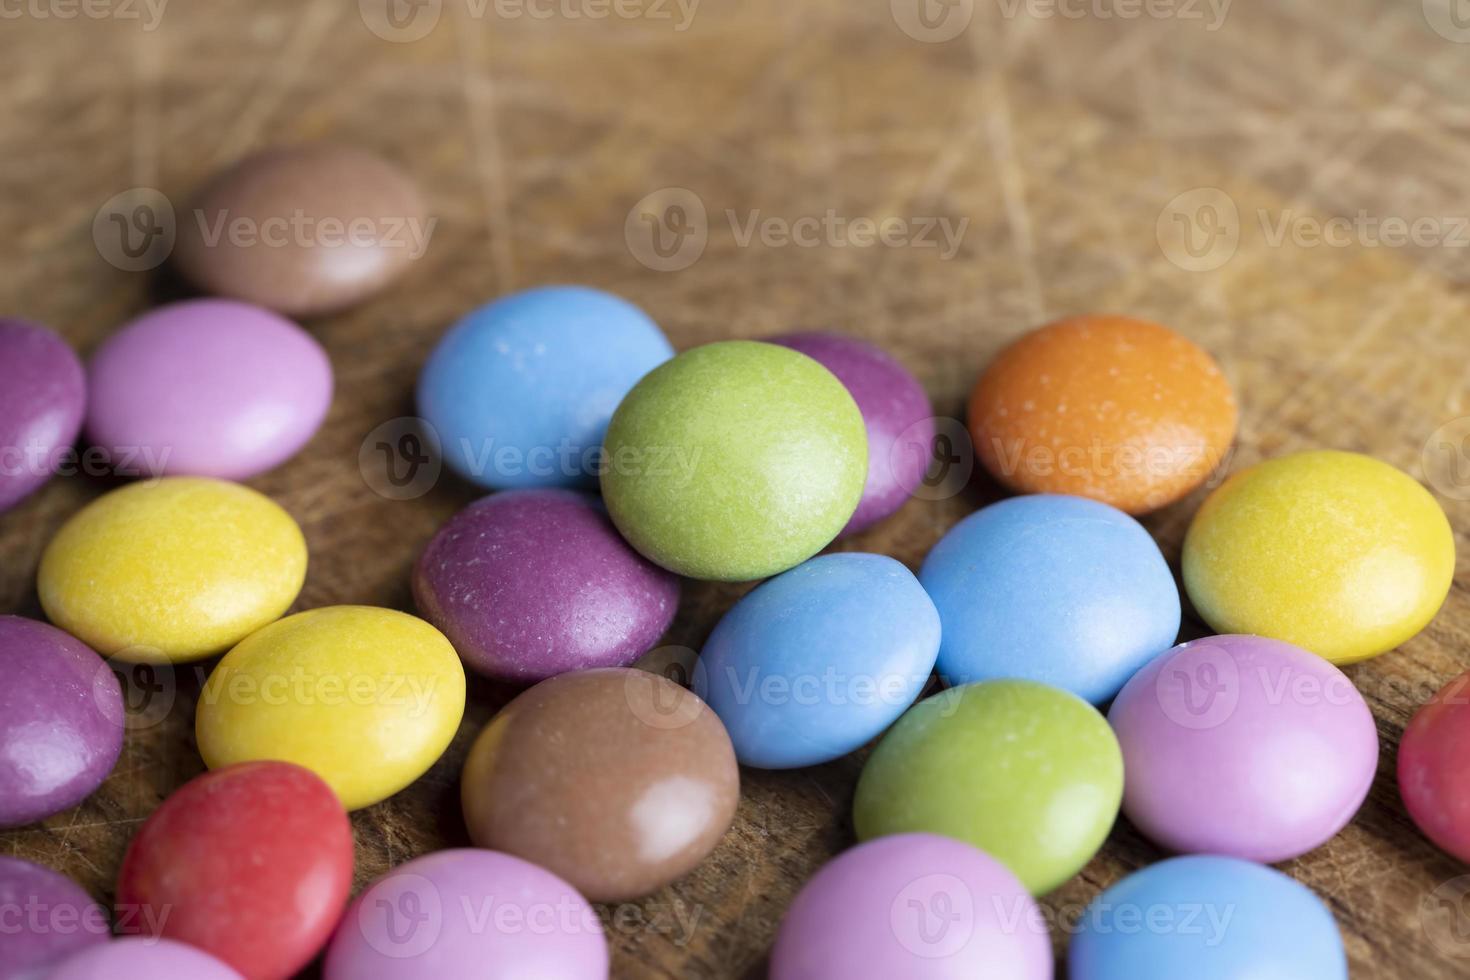 bombones multicolores con relleno de chocolate foto